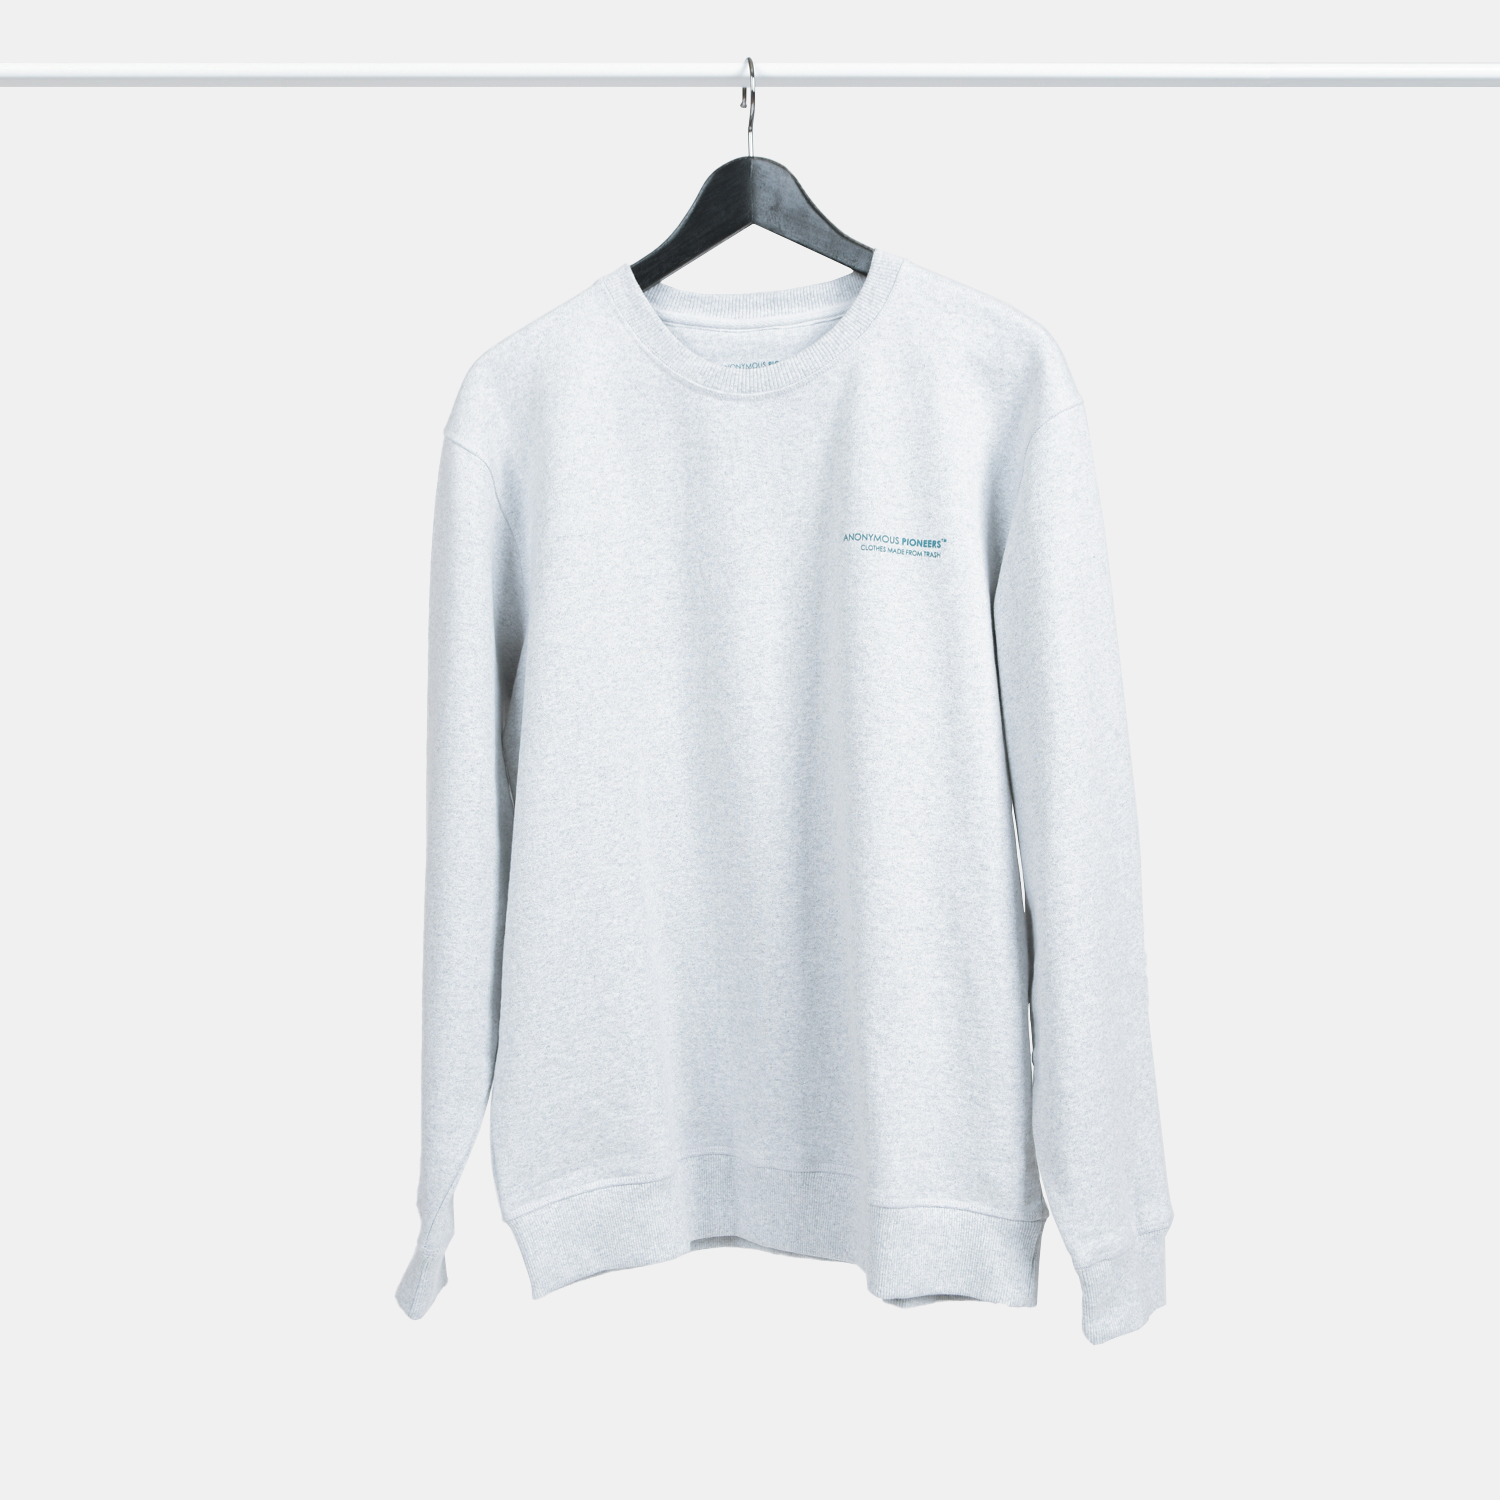 Genanvendt sweatshirt i grå med print fra A-PIONEER